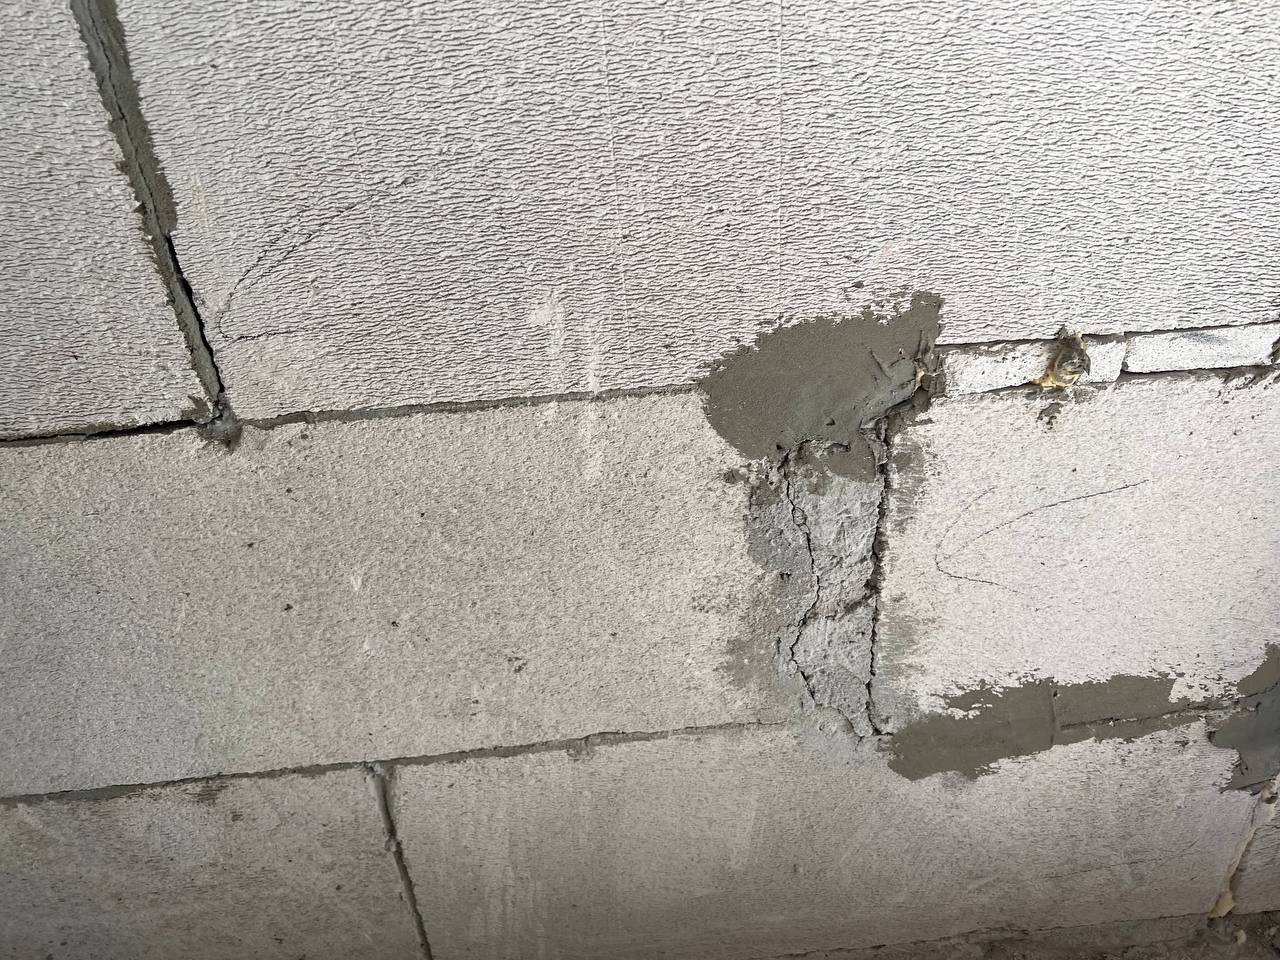 обнаружены трещины и пустые швы в наружных стенах